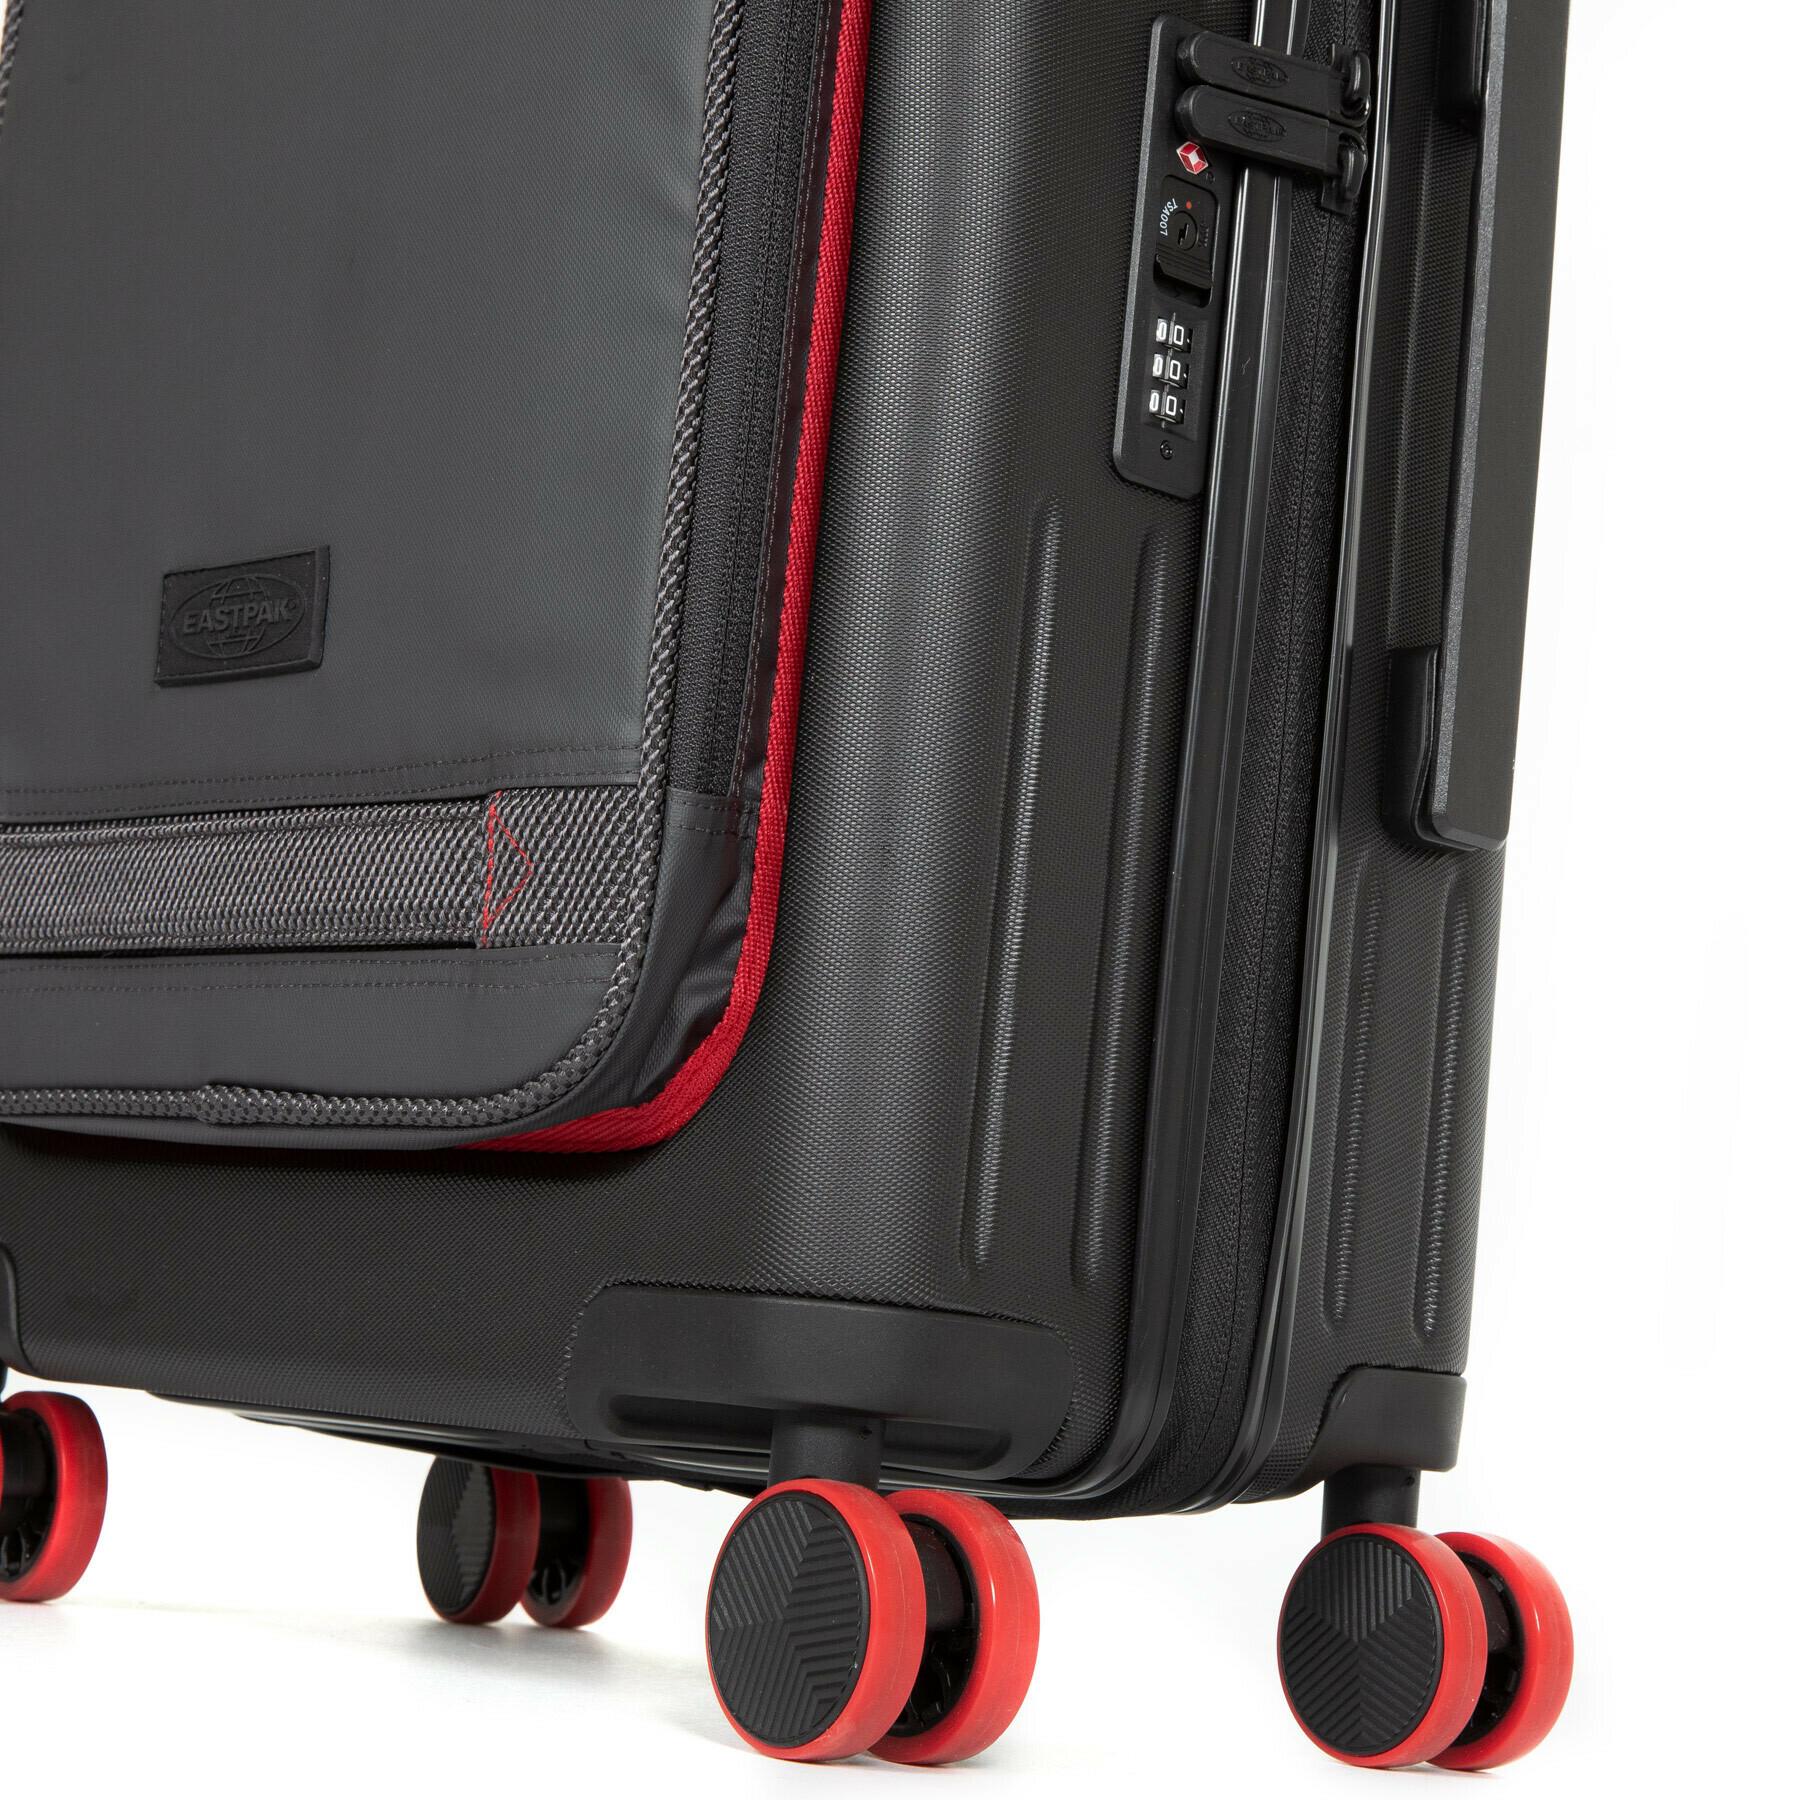 Suitcase Eastpak Case S